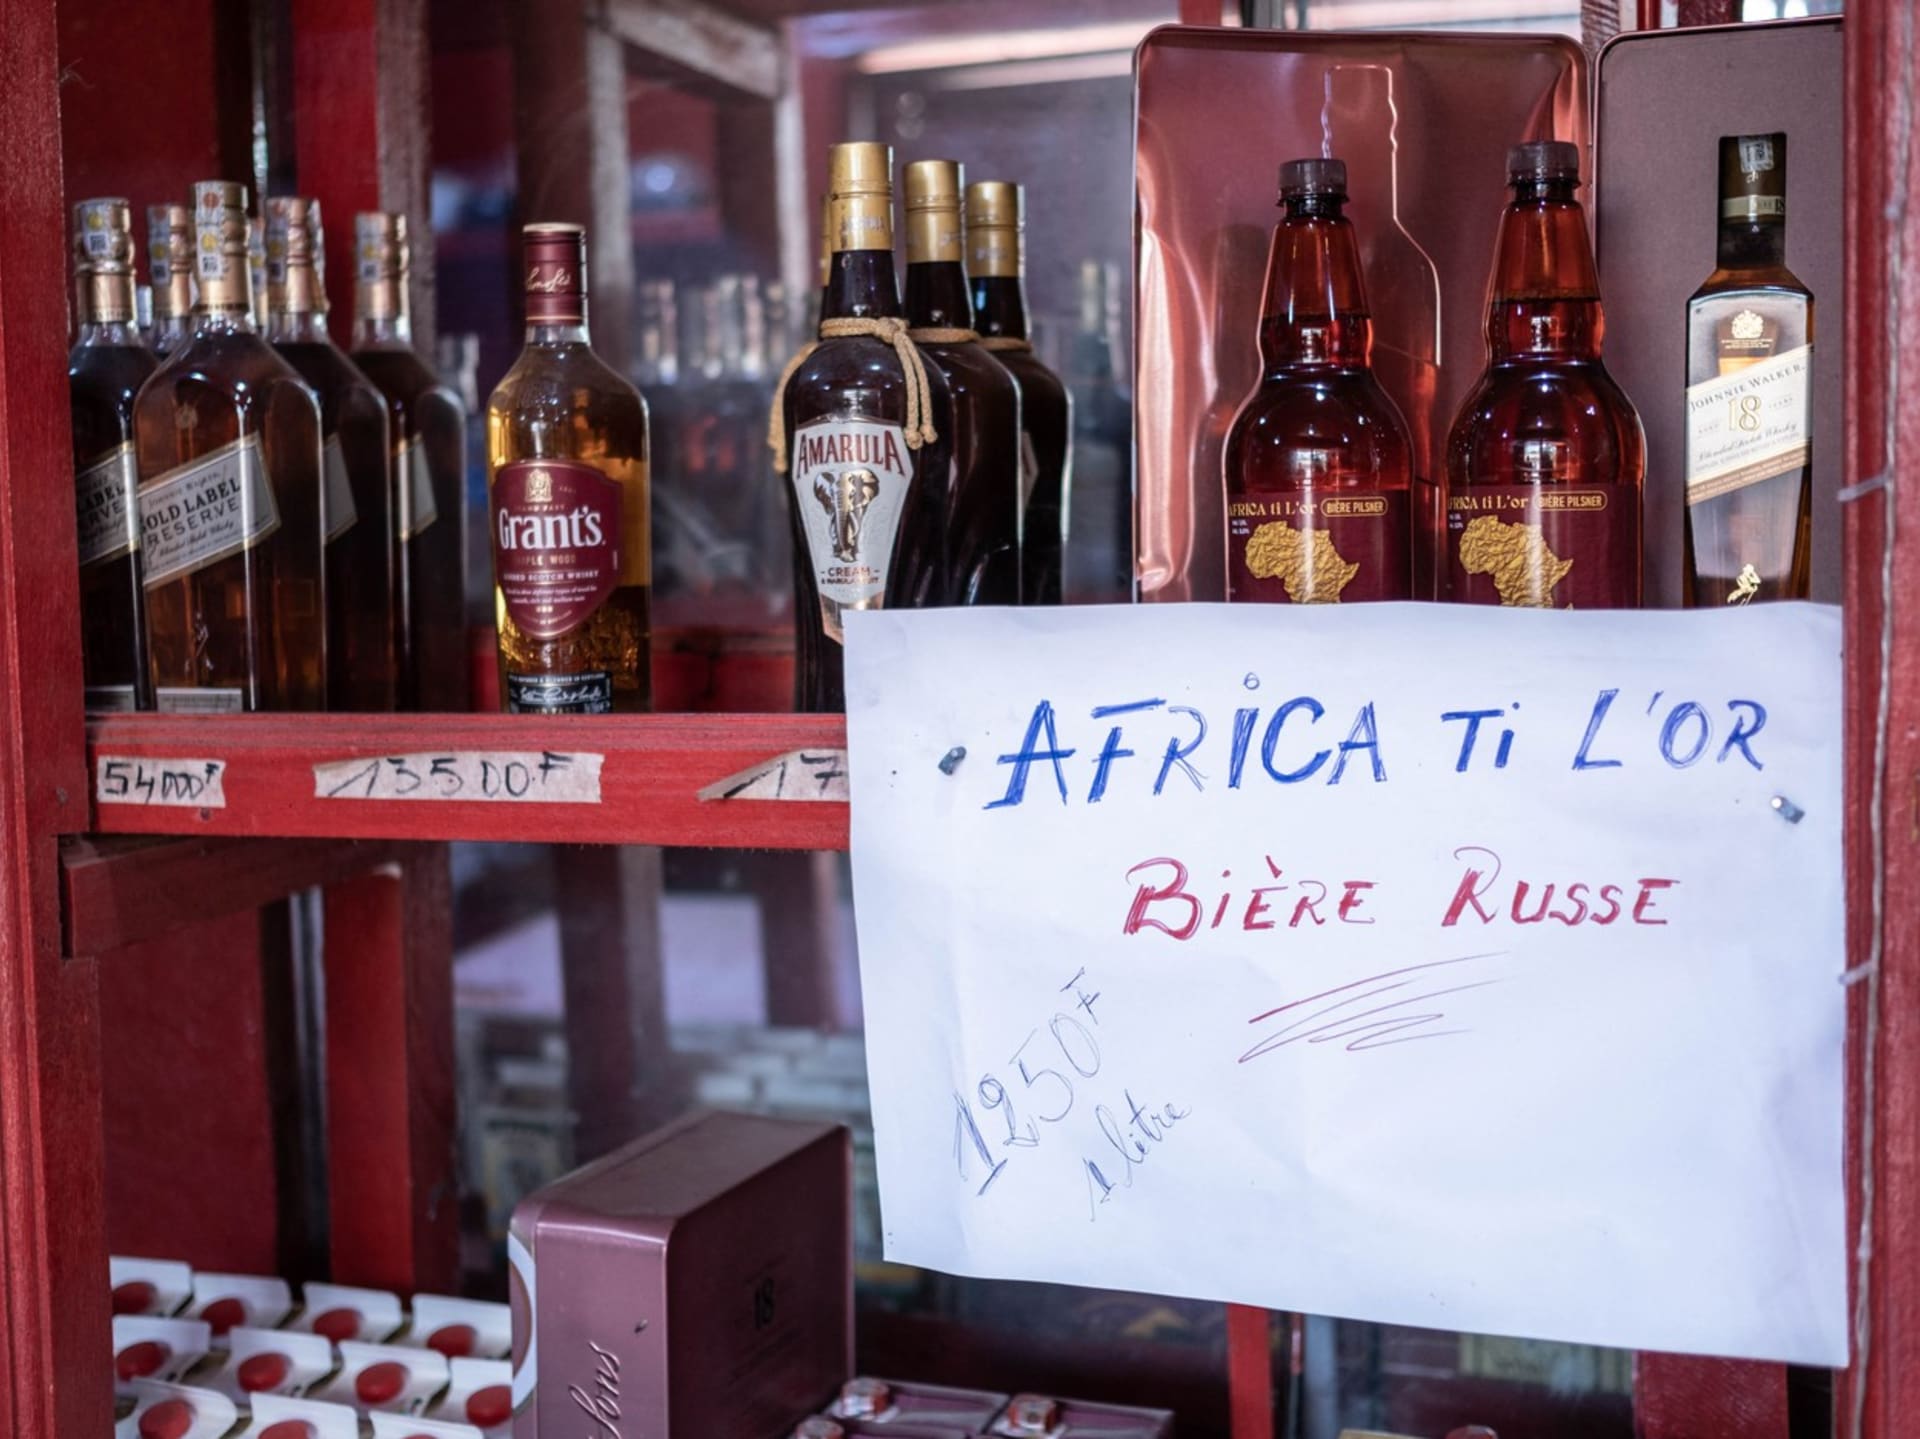 Ve Středoafrické republice je kvůli přítomnosti vagnerovců k dostání ruské pivo.